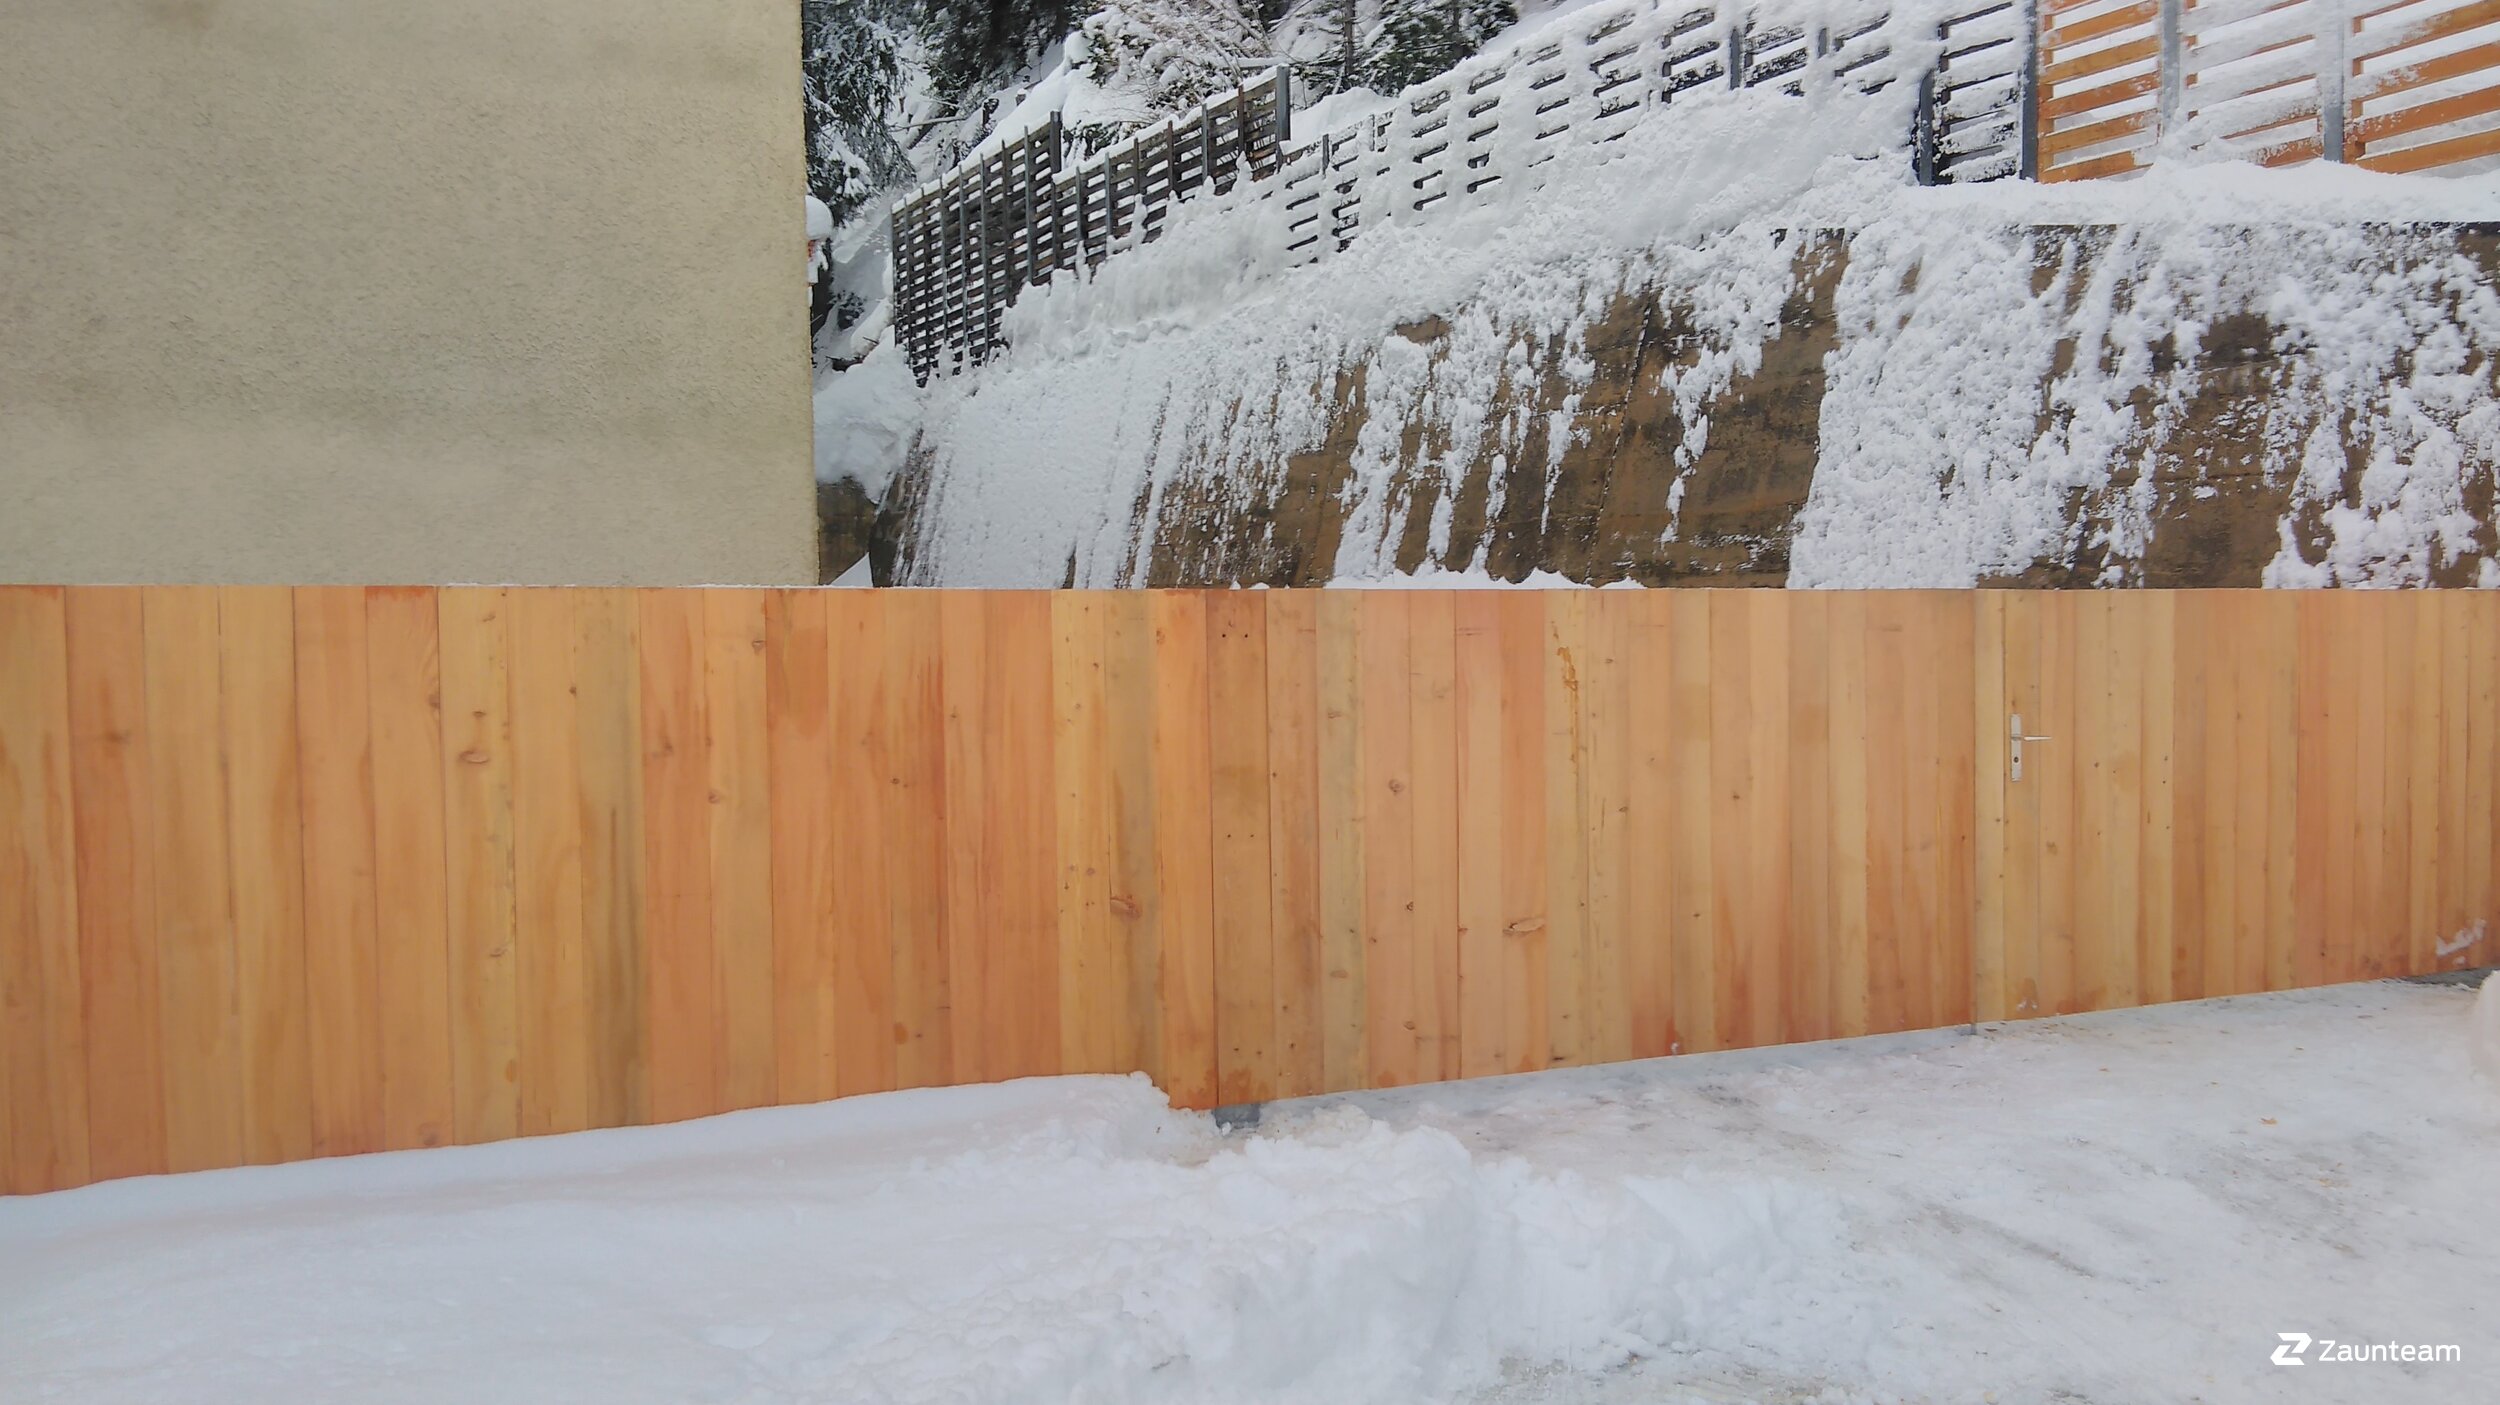 Protection brise-vue en bois de 2019 à 7500 St.Moritz Suisse de Zaunteam Engadin.